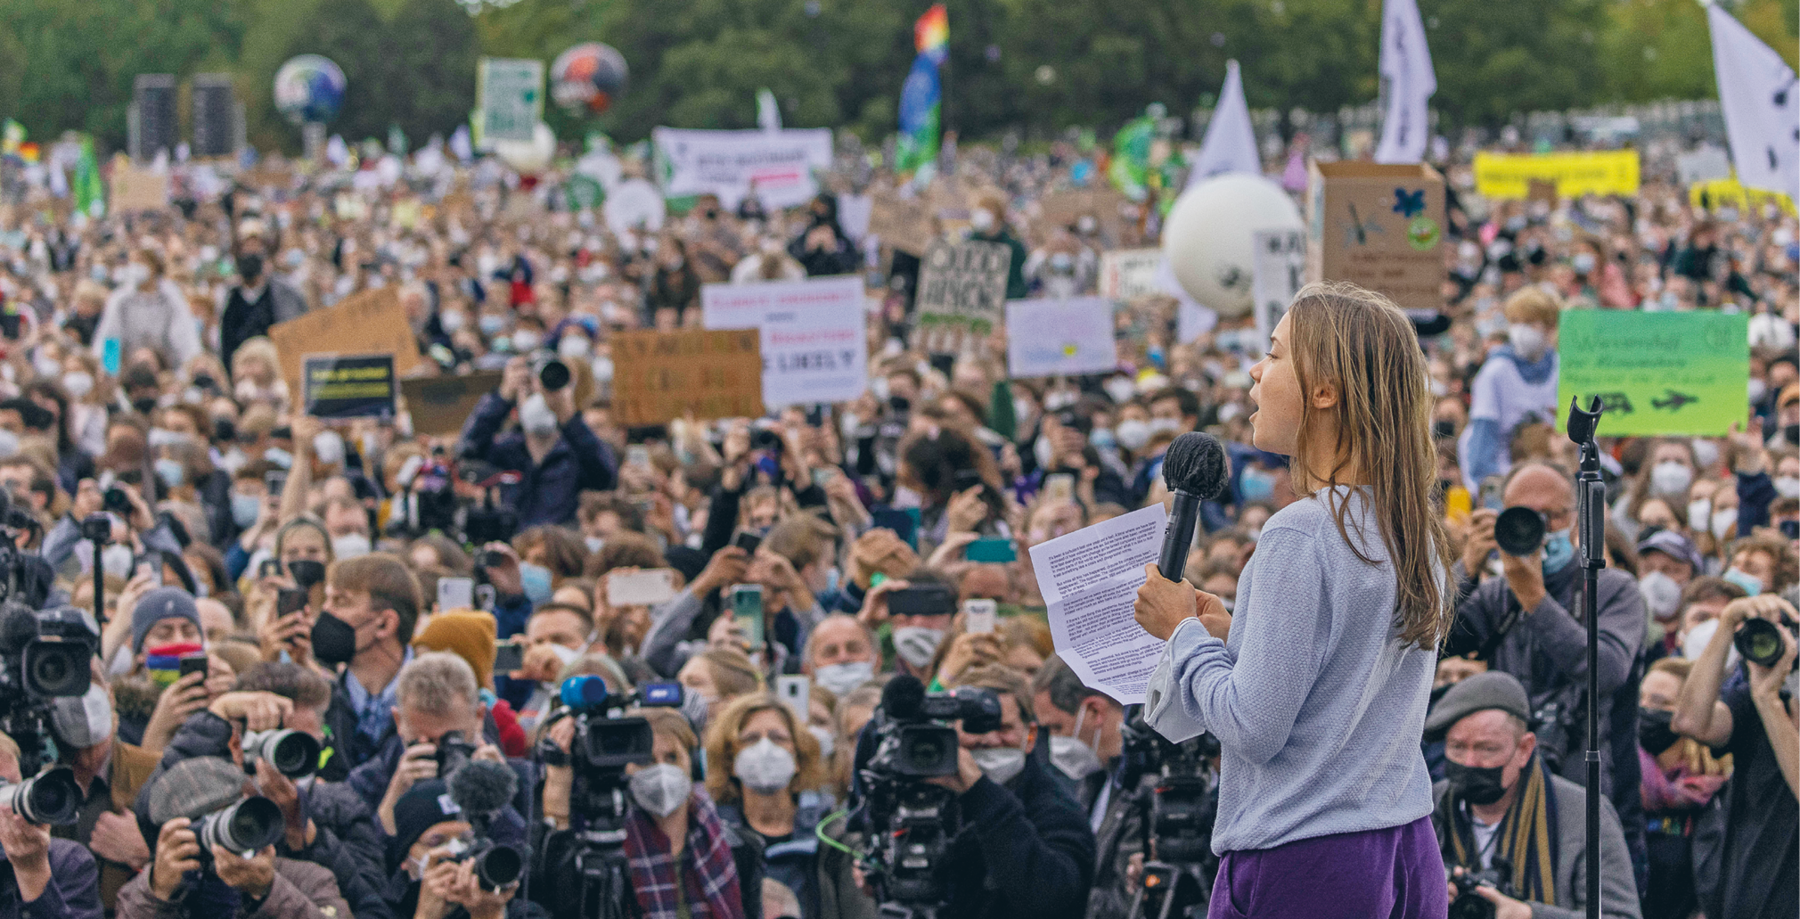 Fotografia. Greta Thunberg, moça loira de cabelo comprido discursando em um palanque. À frente dela, fotógrafos, repórteres e uma multidão com cartazes.